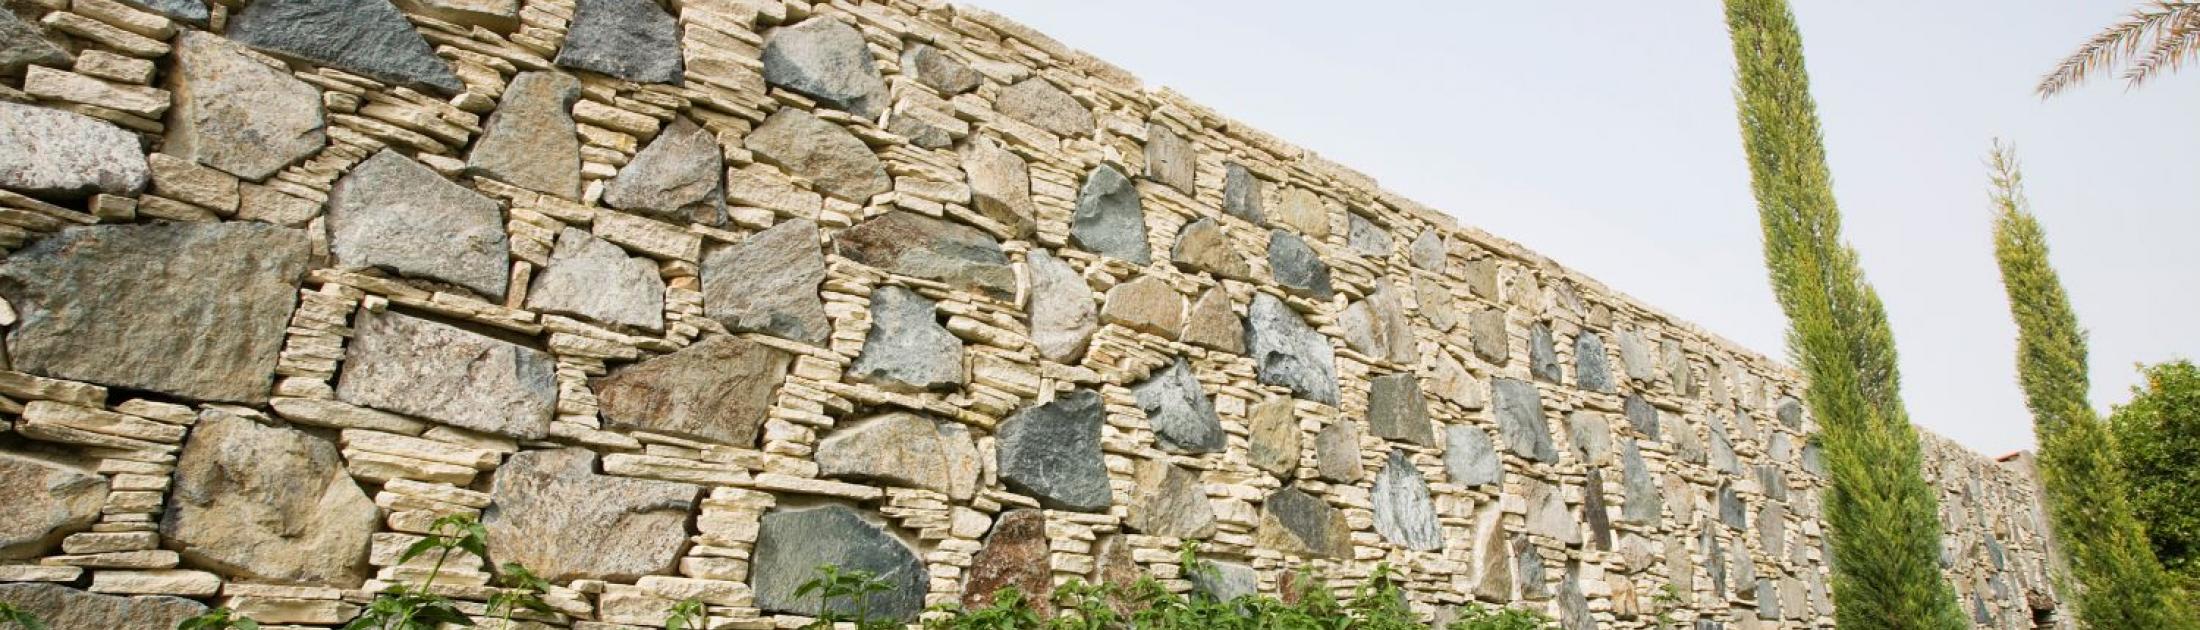 Murs de soutènement en pierre